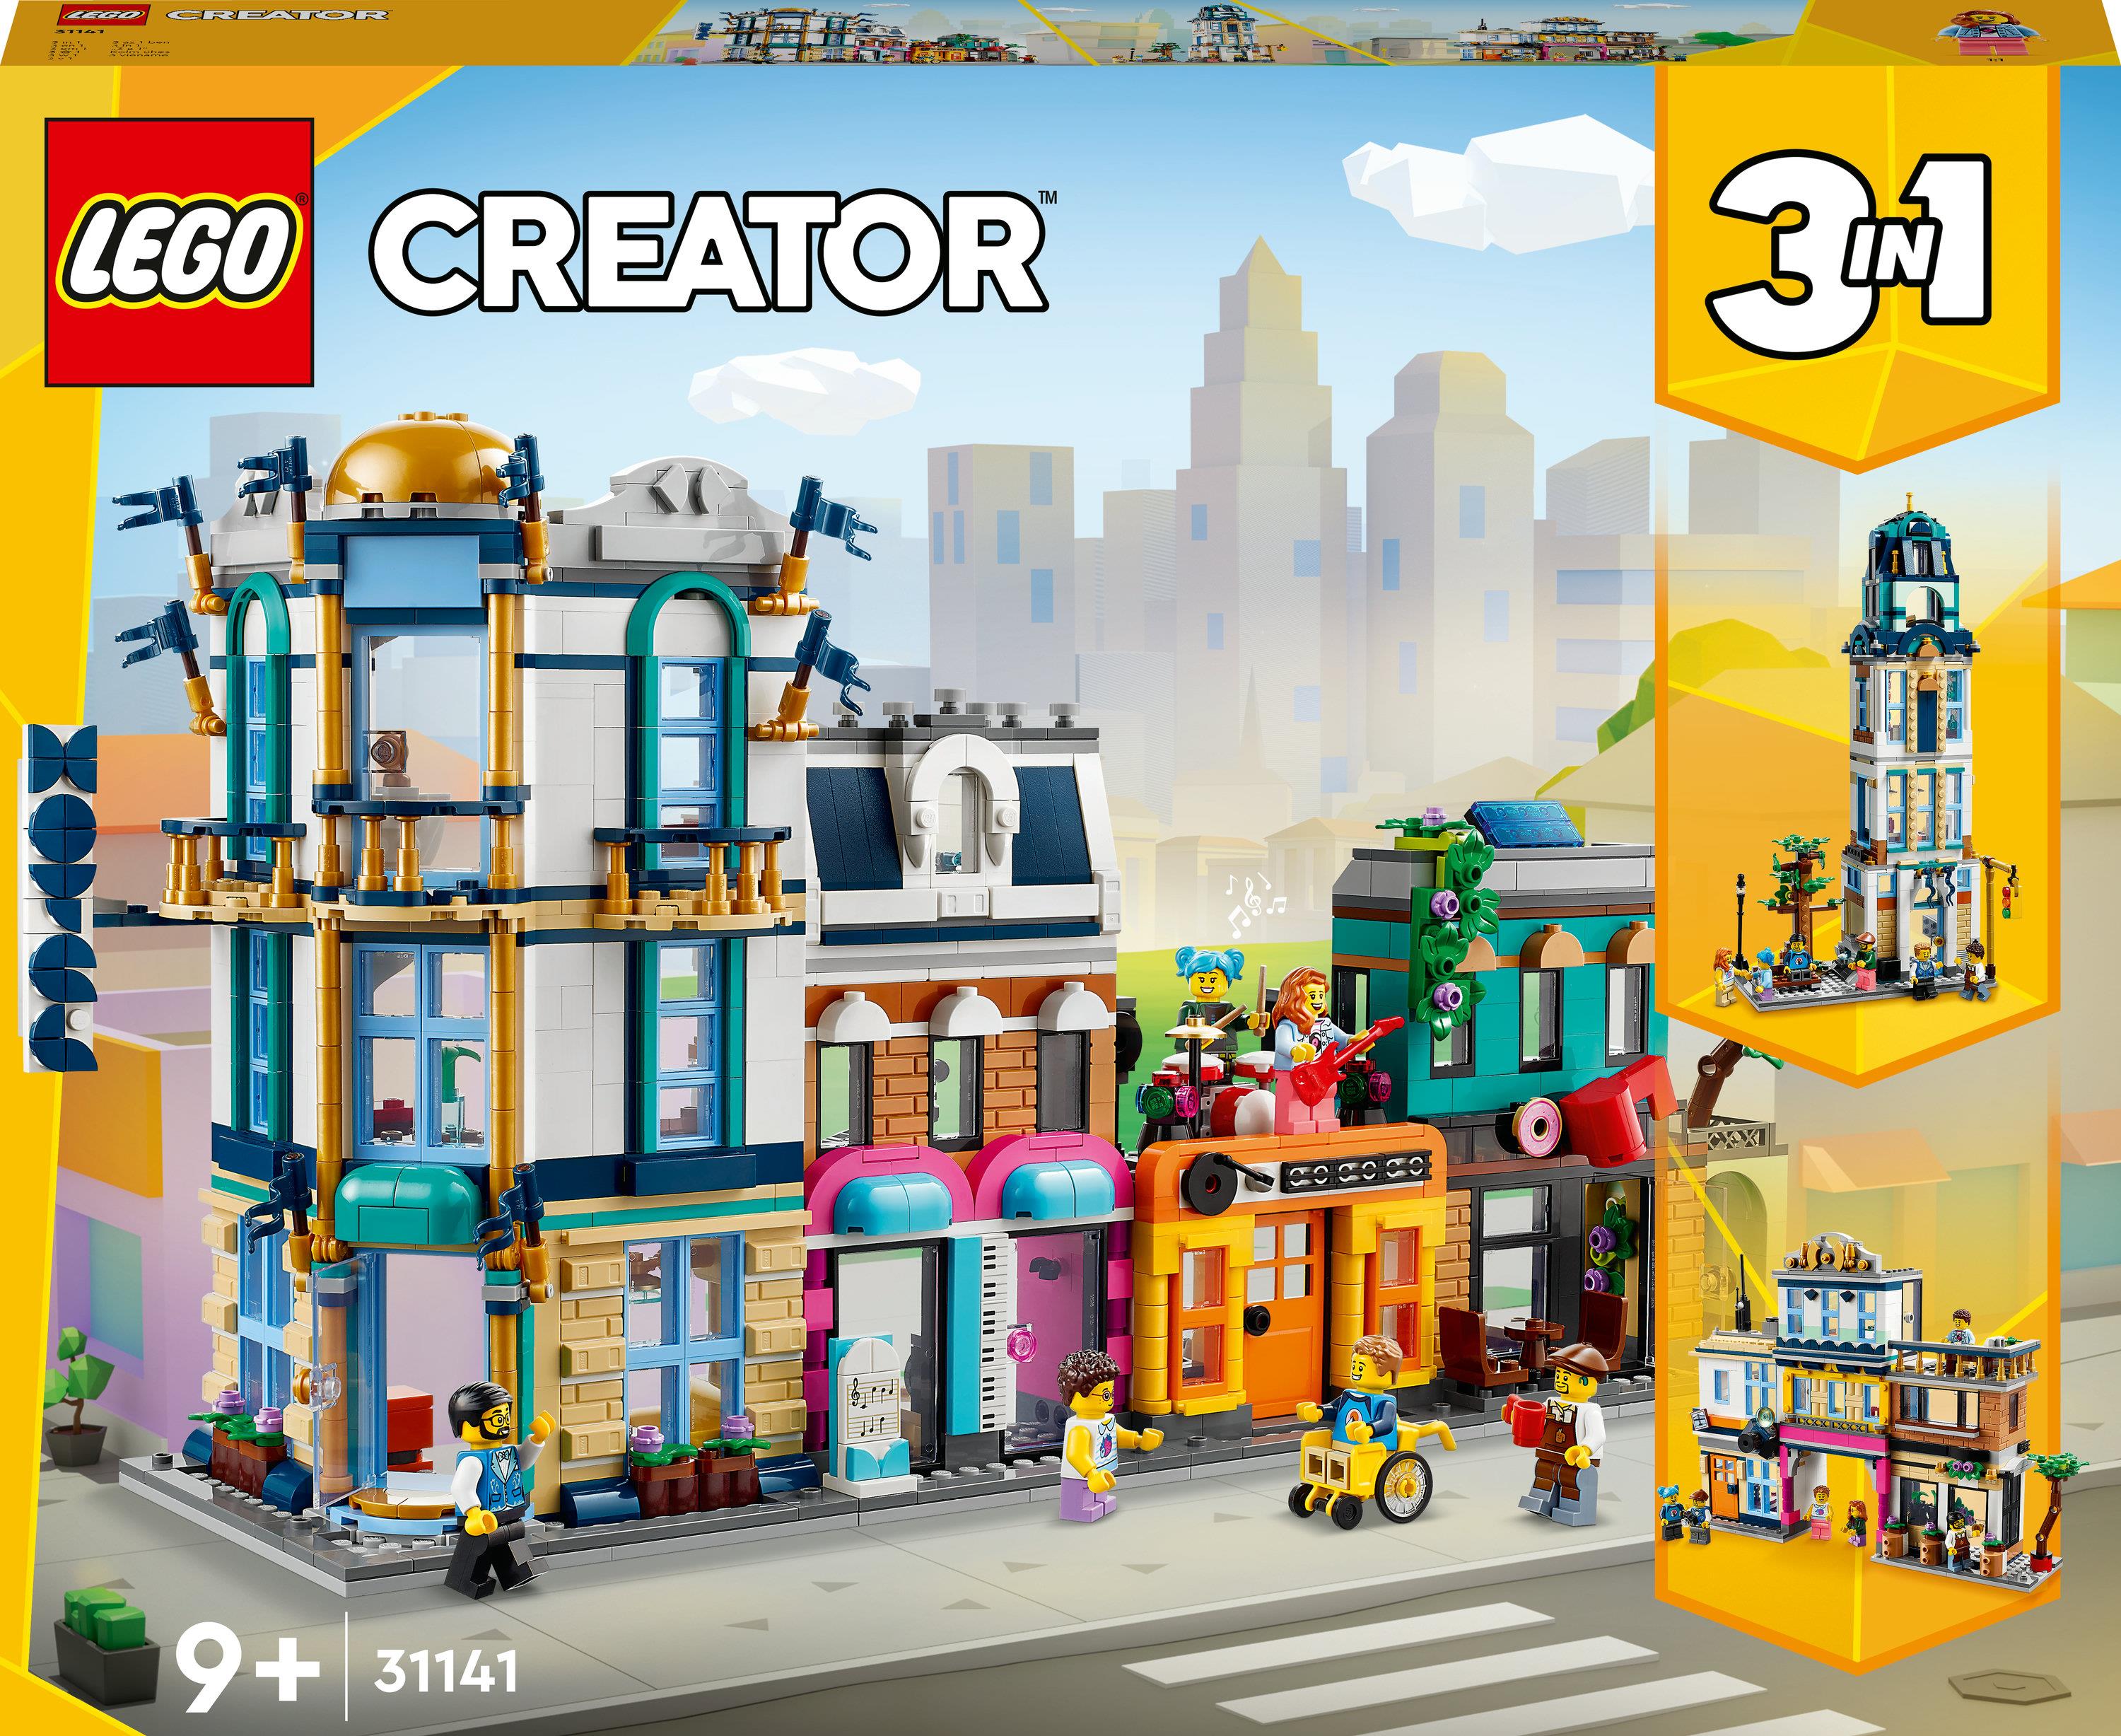 LEGO Creator 3in1 31141